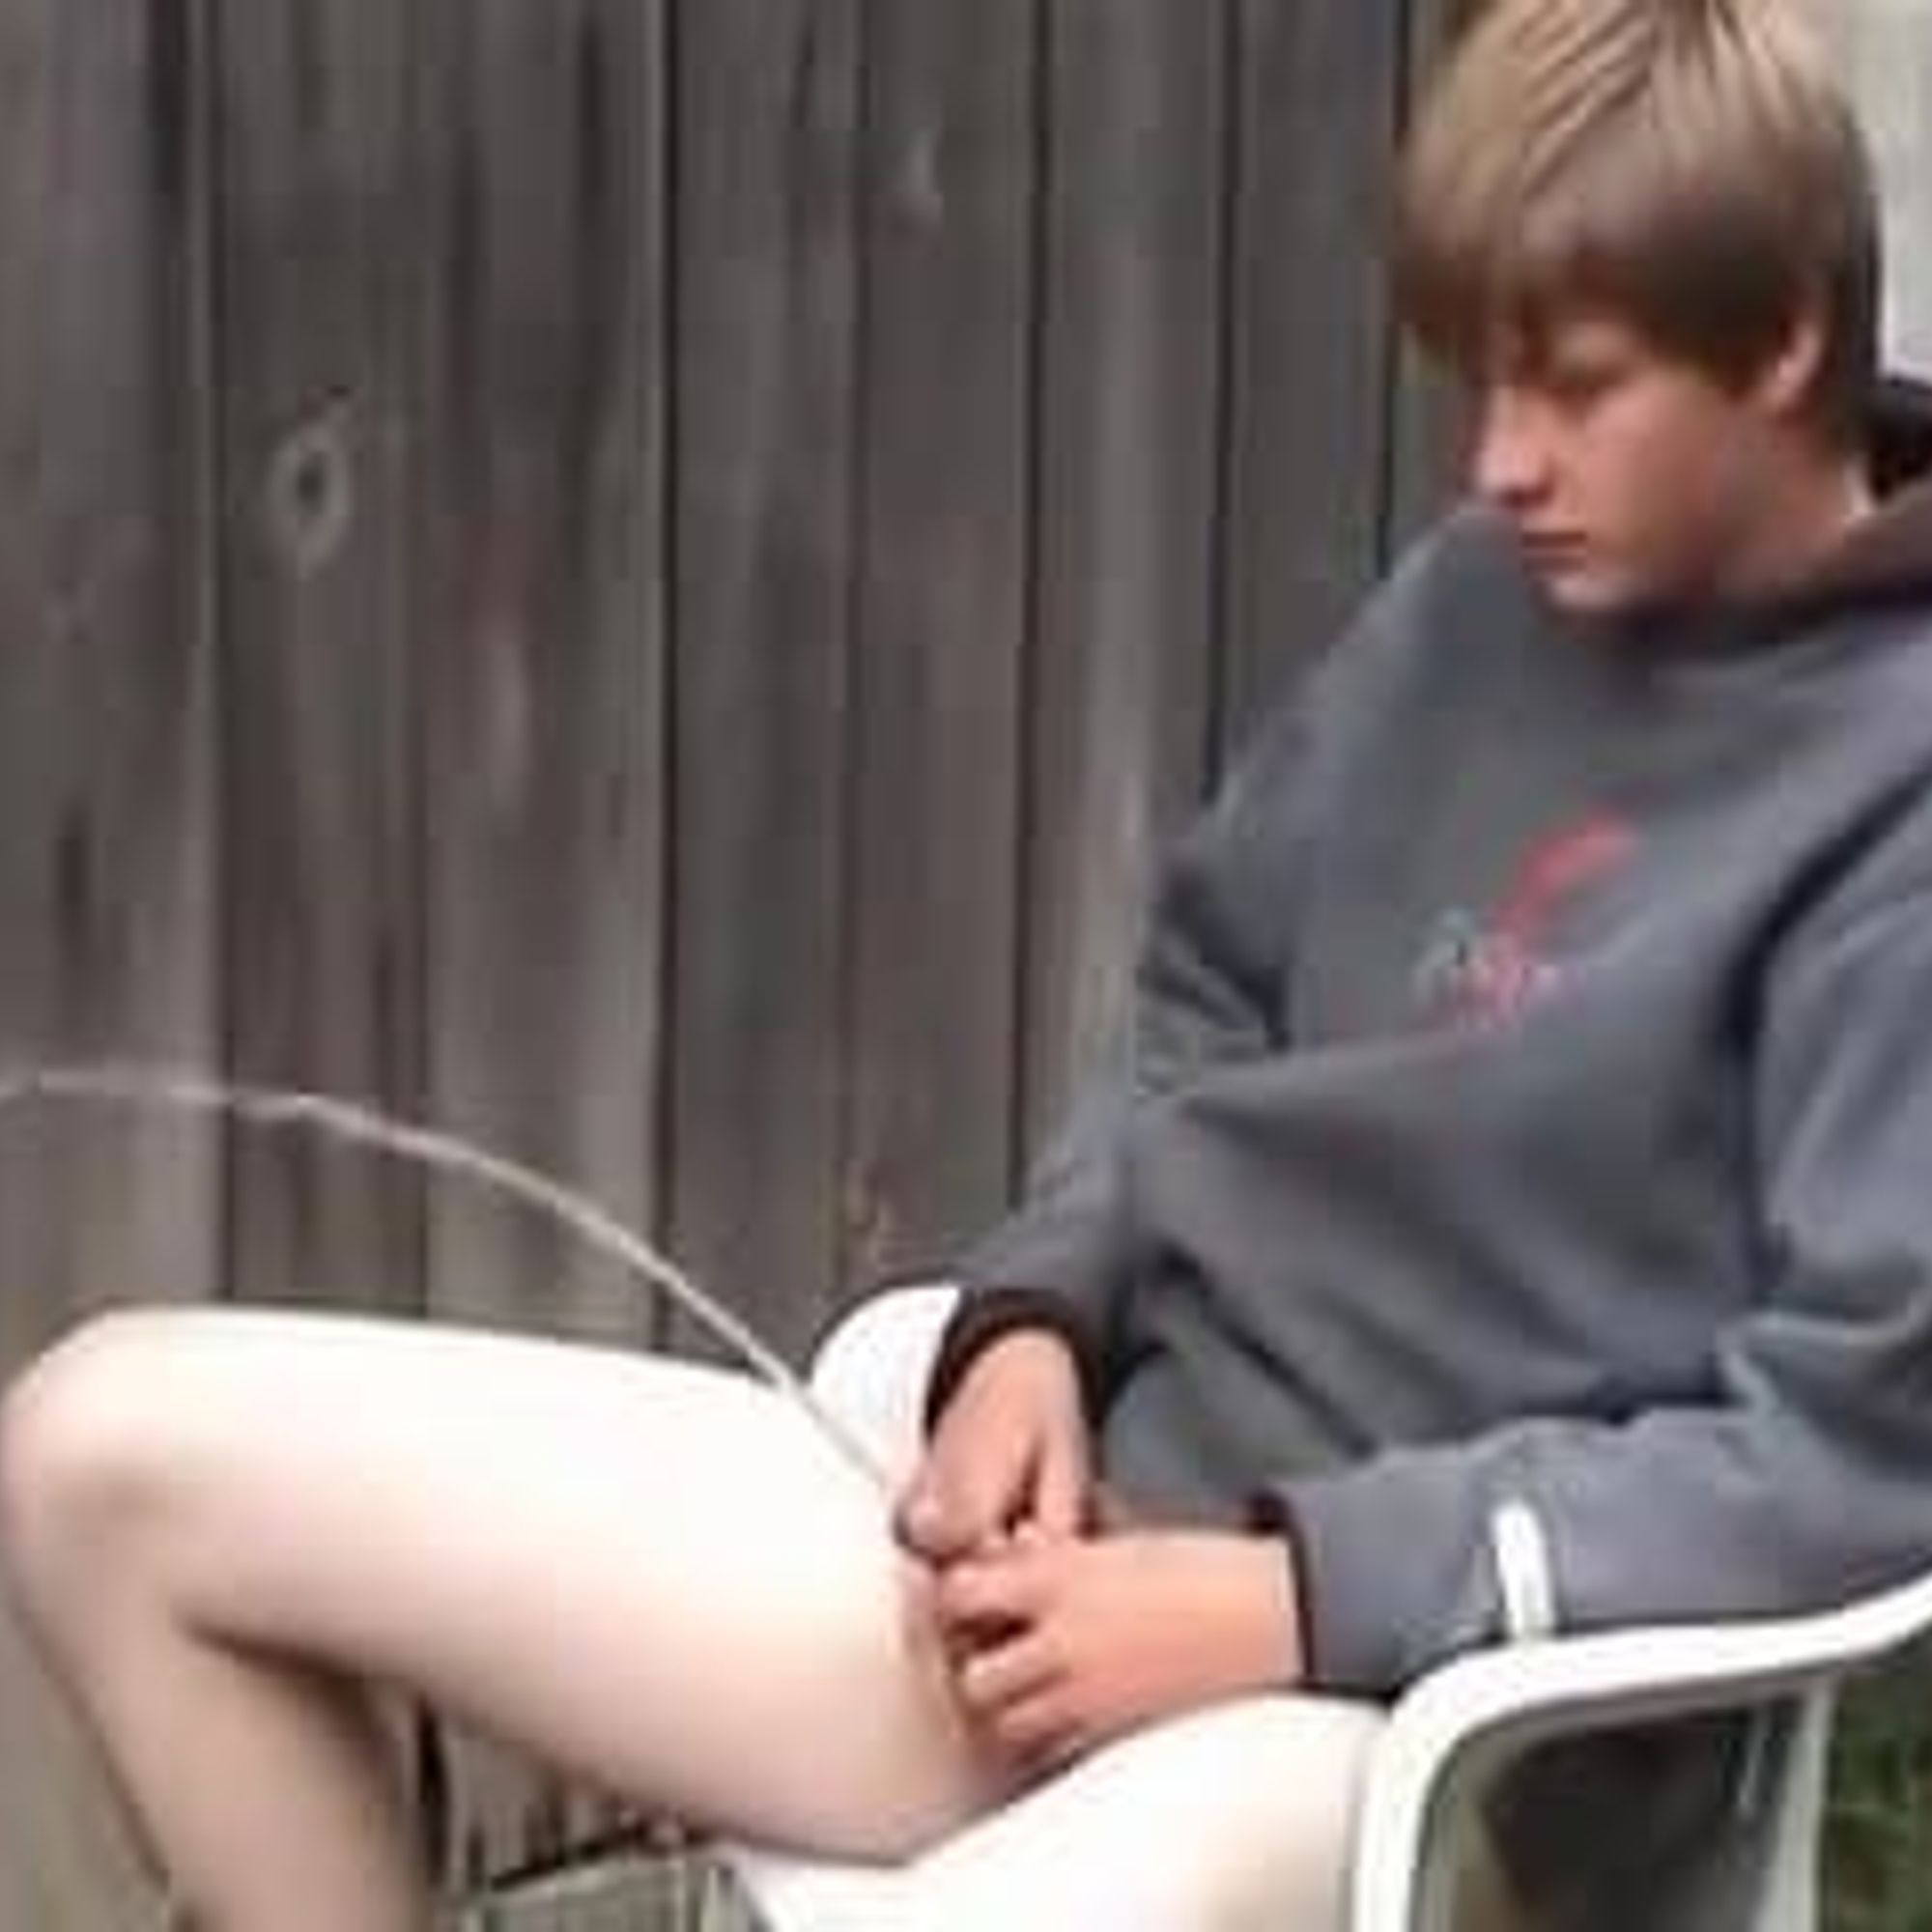 Naked teenage boy peeing